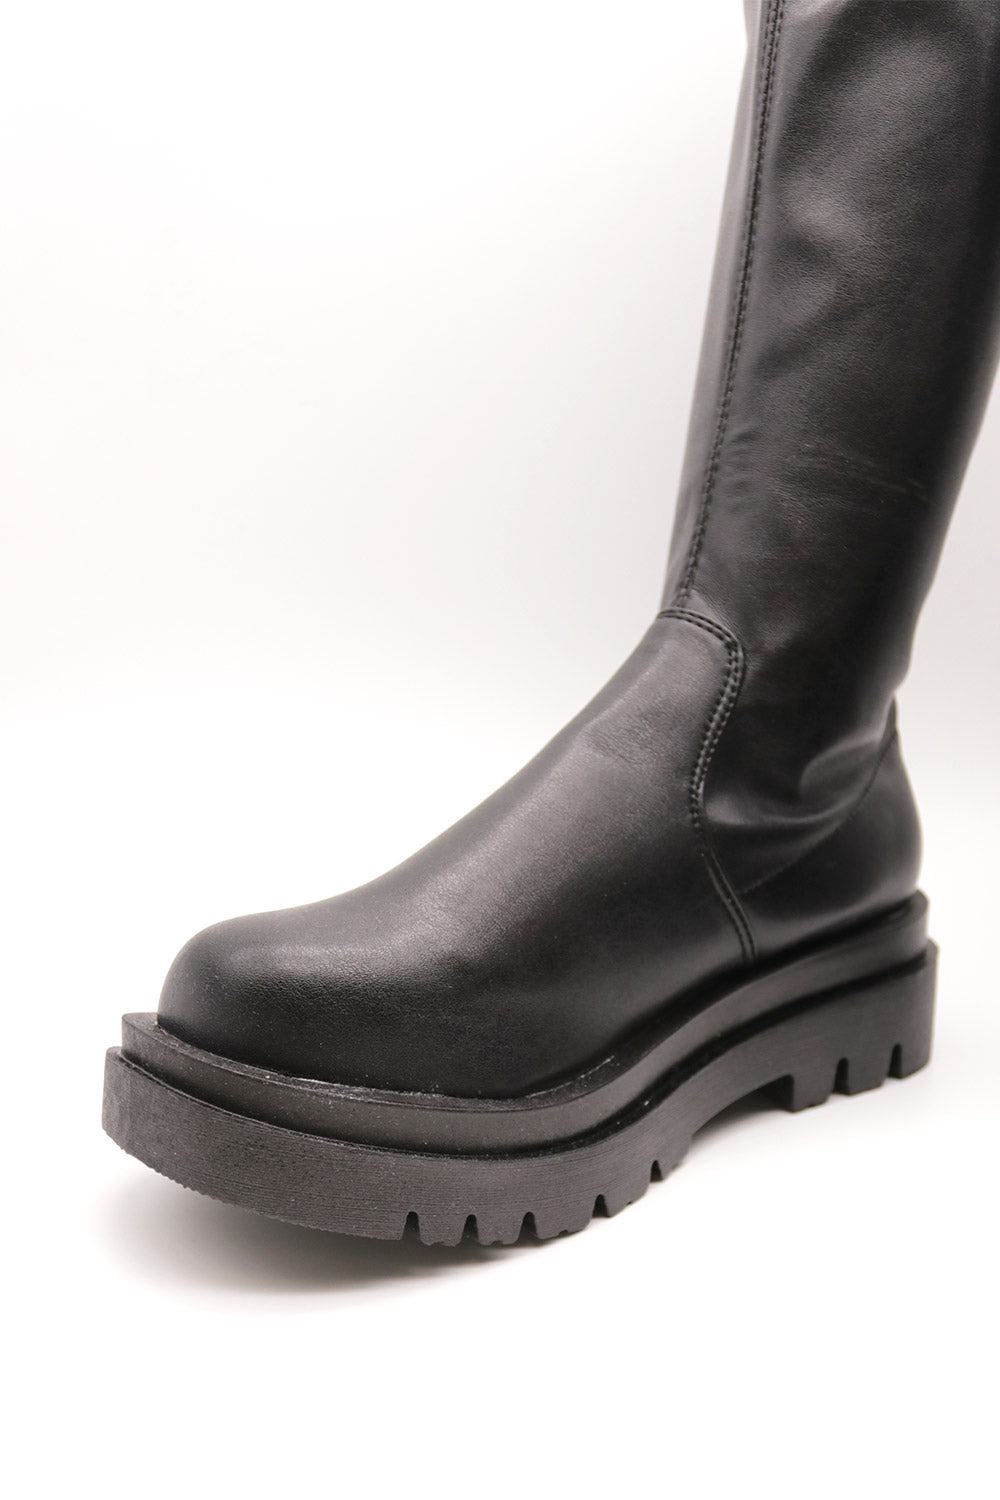 storets.com Claire Stretchy Flatform Boots